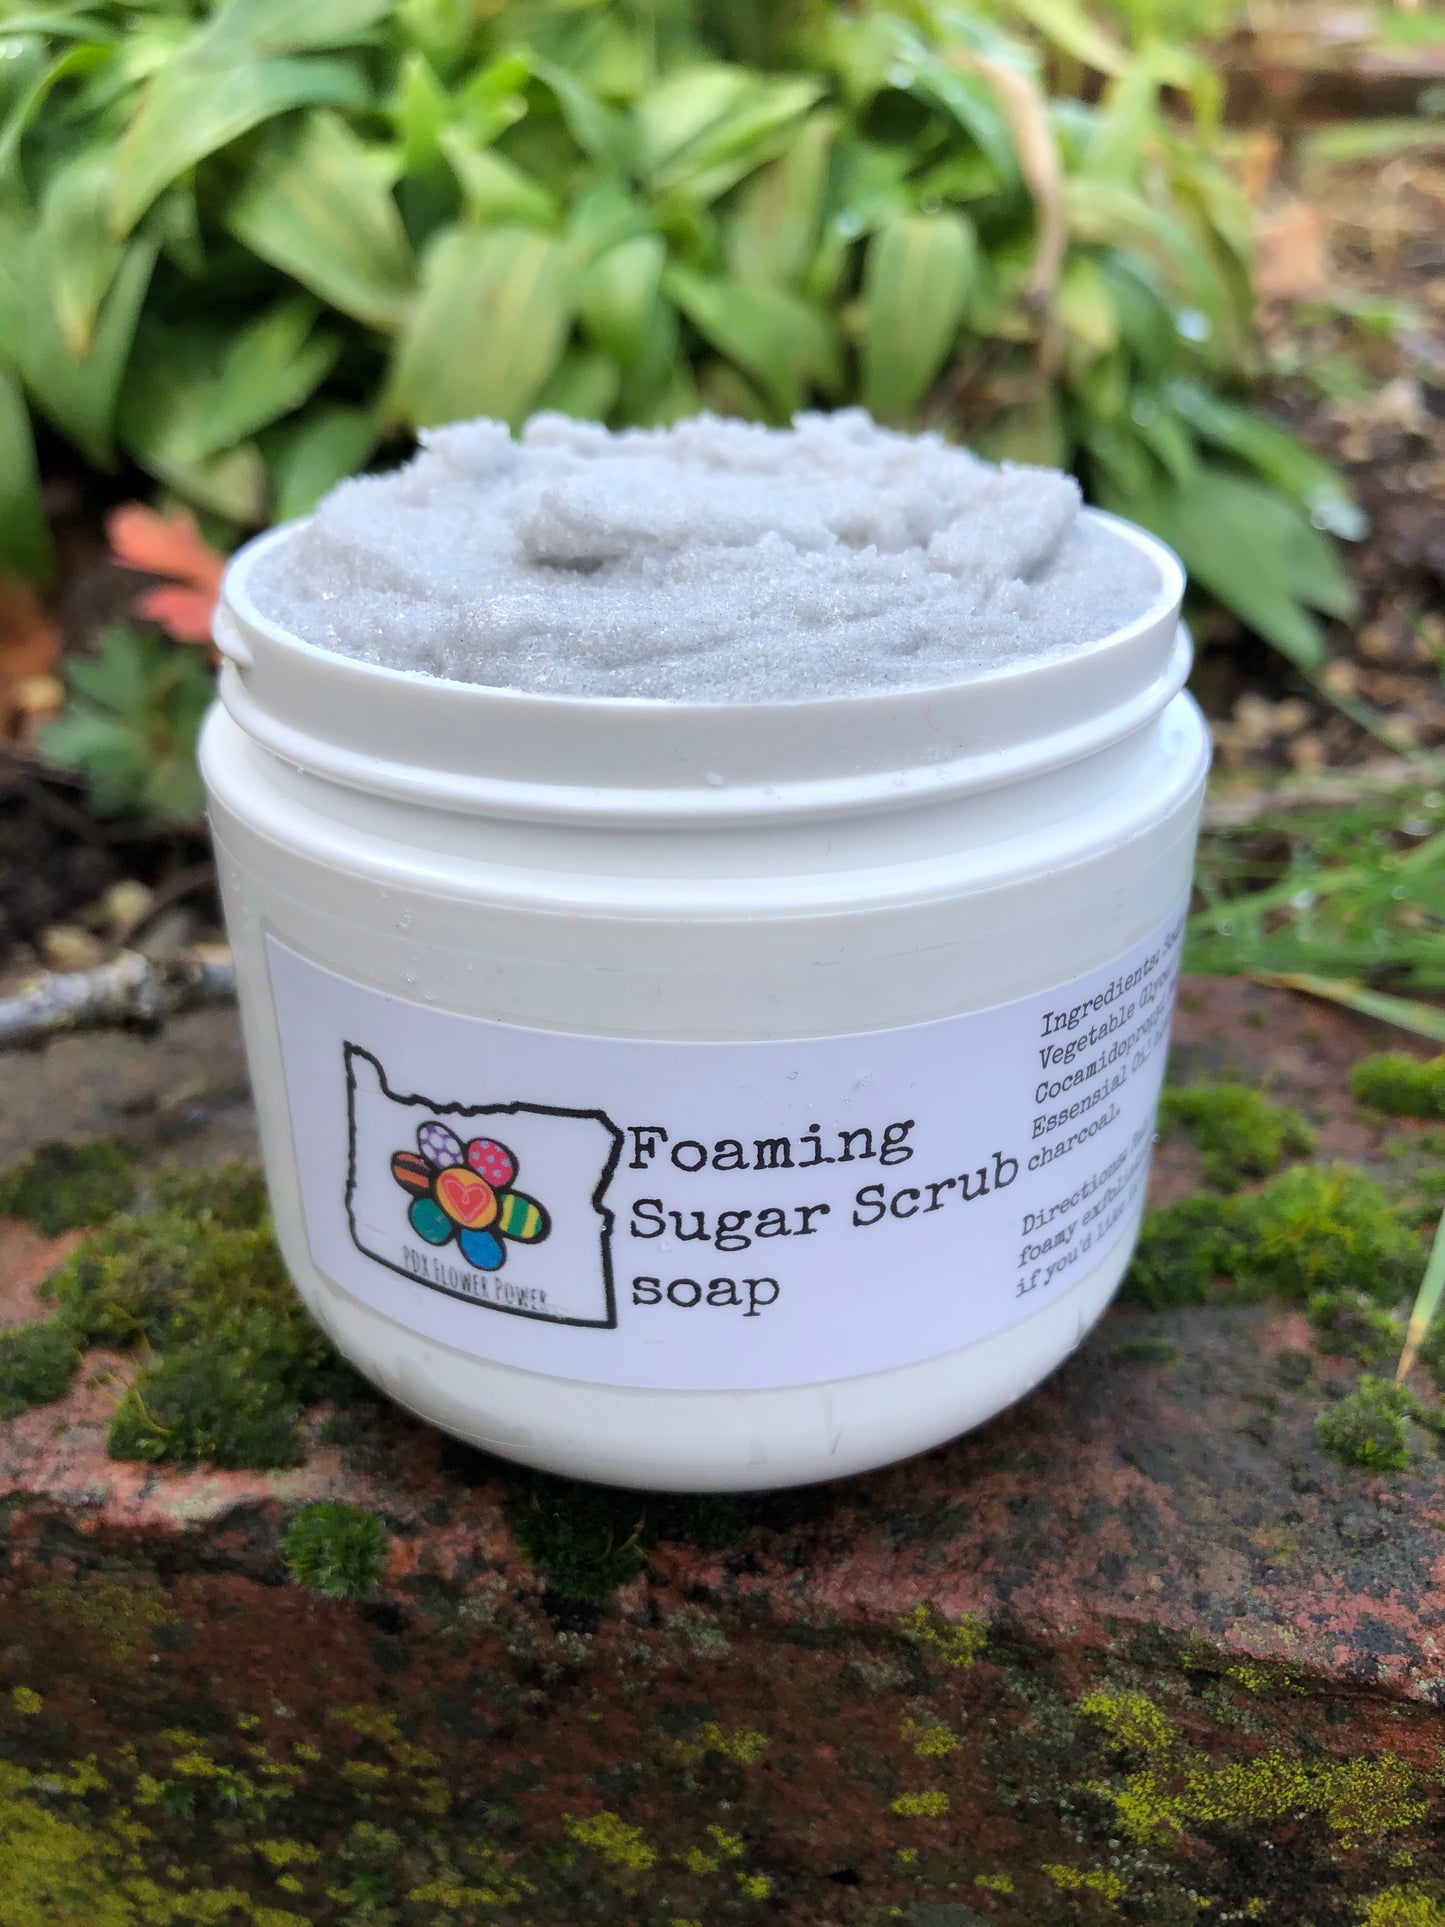 Foaming Sugar scrub soap